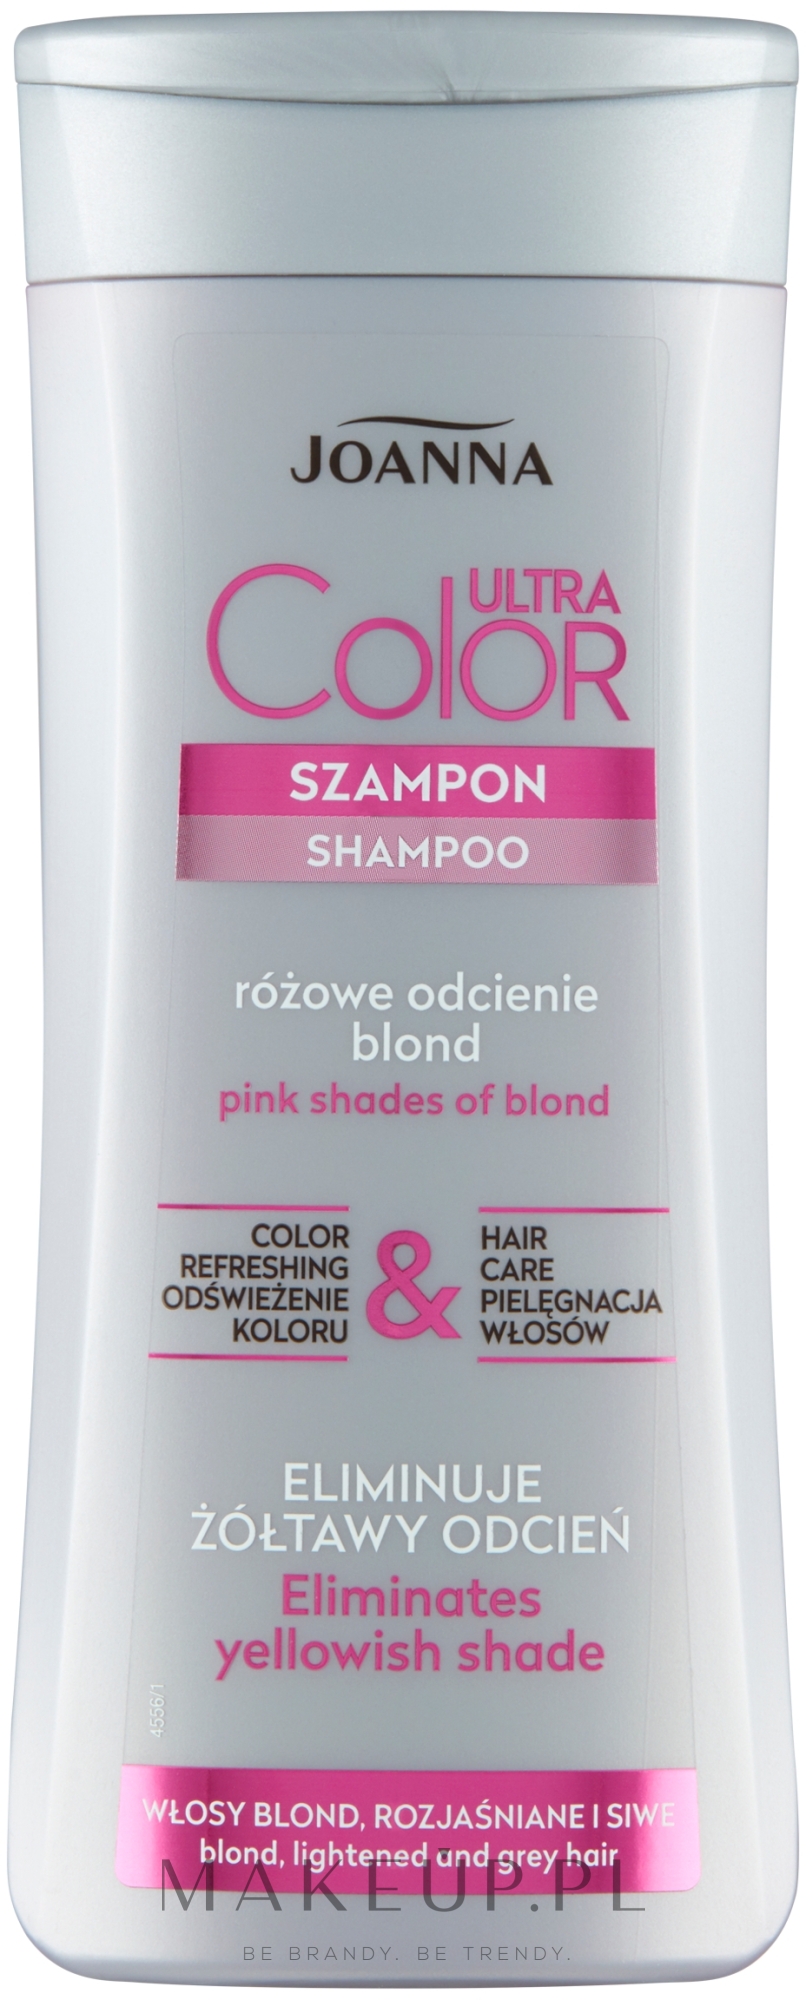 jaki daje kolor różowy szampon